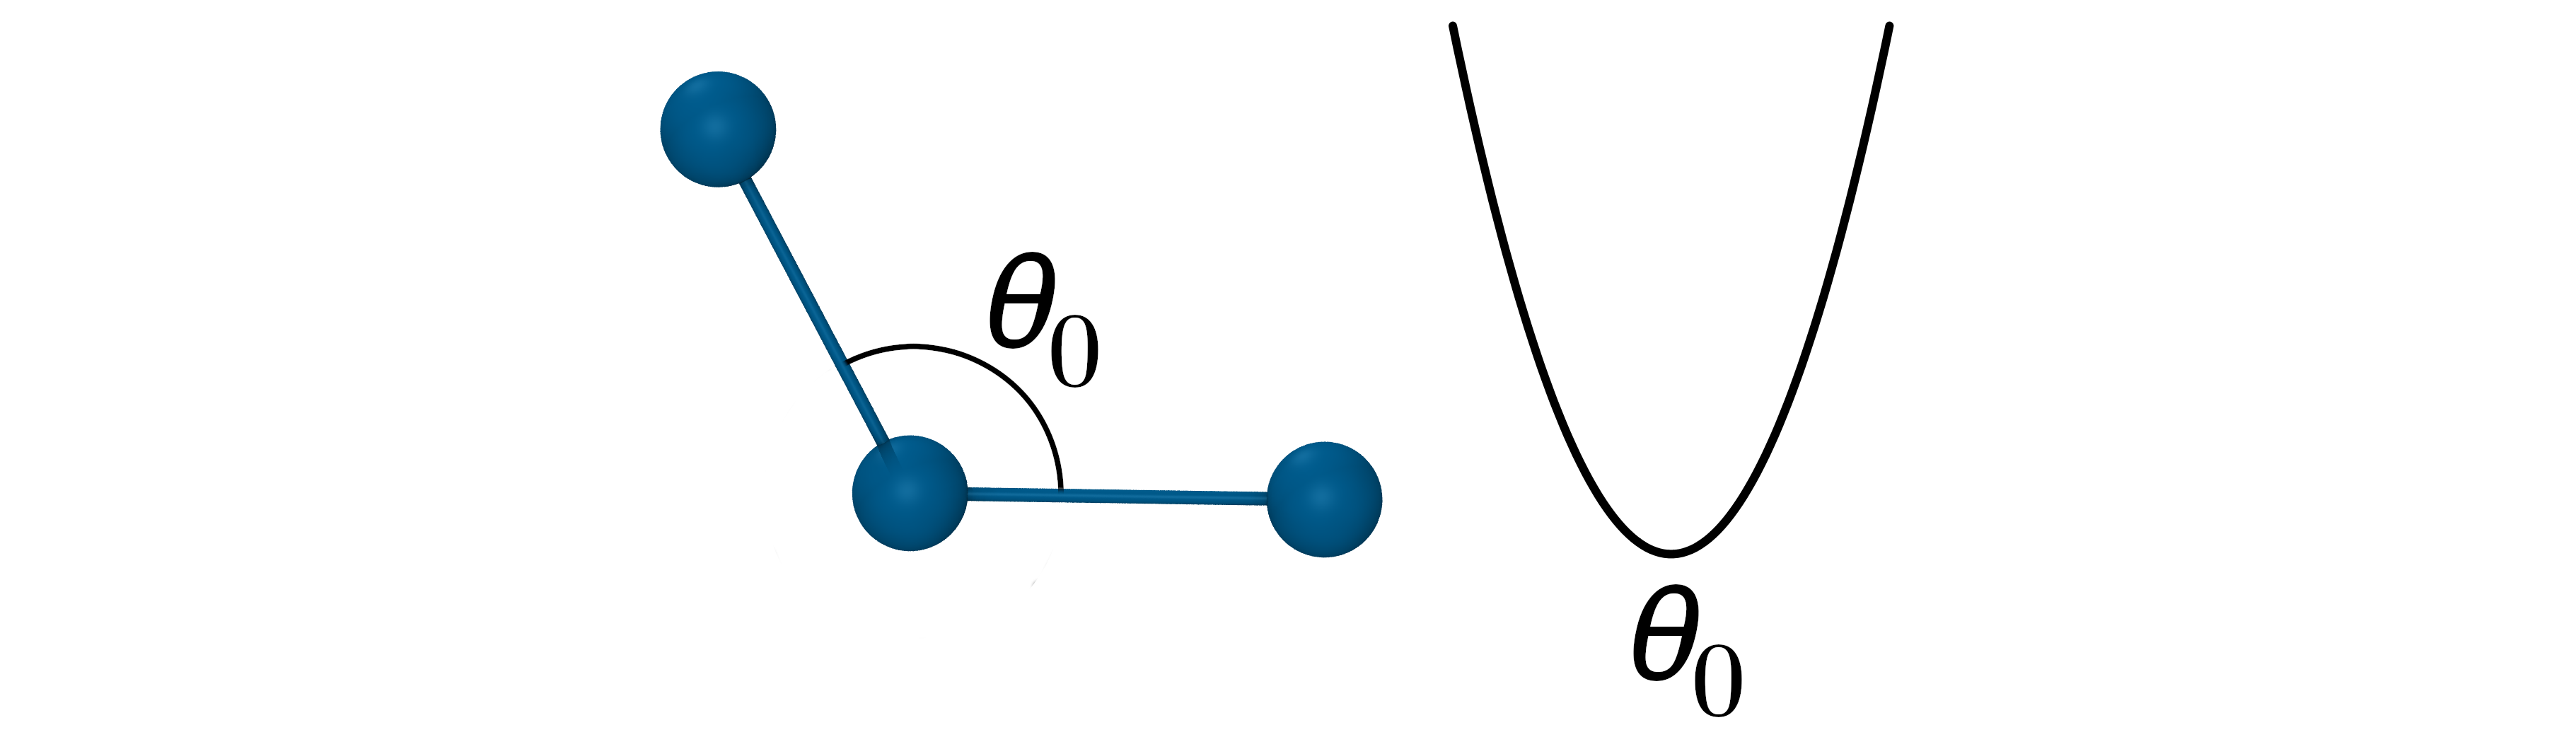 graph: harmonic angle potential